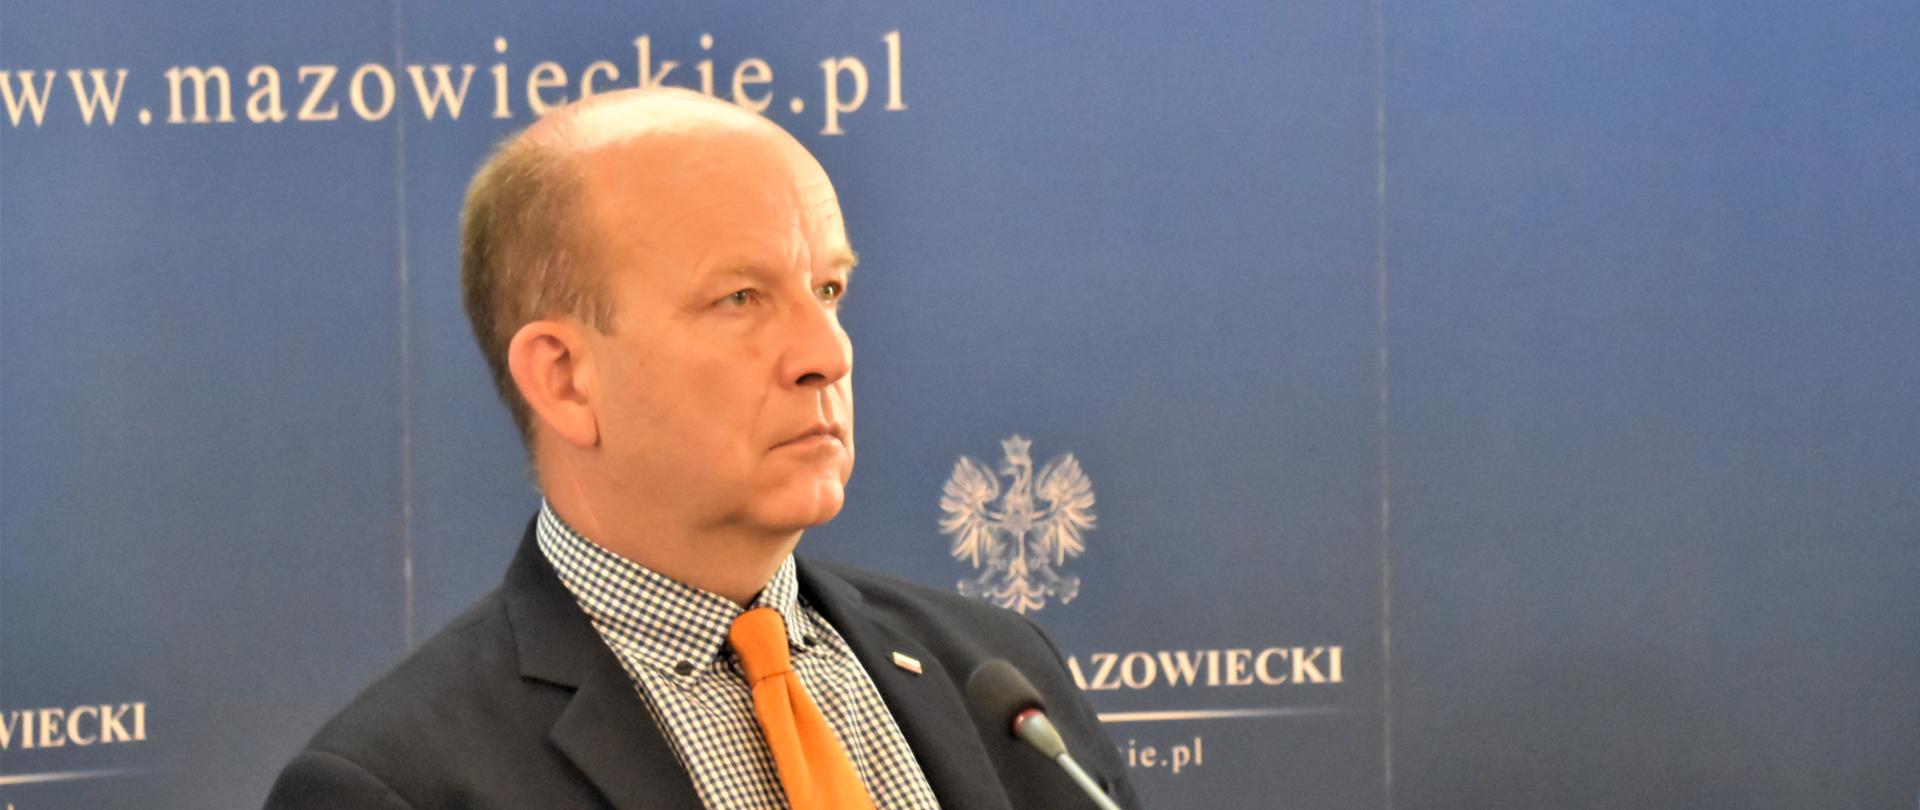 Konstanty Radziwiłł podczas posiedzenia Mazowieckiego Wojewódzkiego Zespołu Zarządzania Kryzysowego.